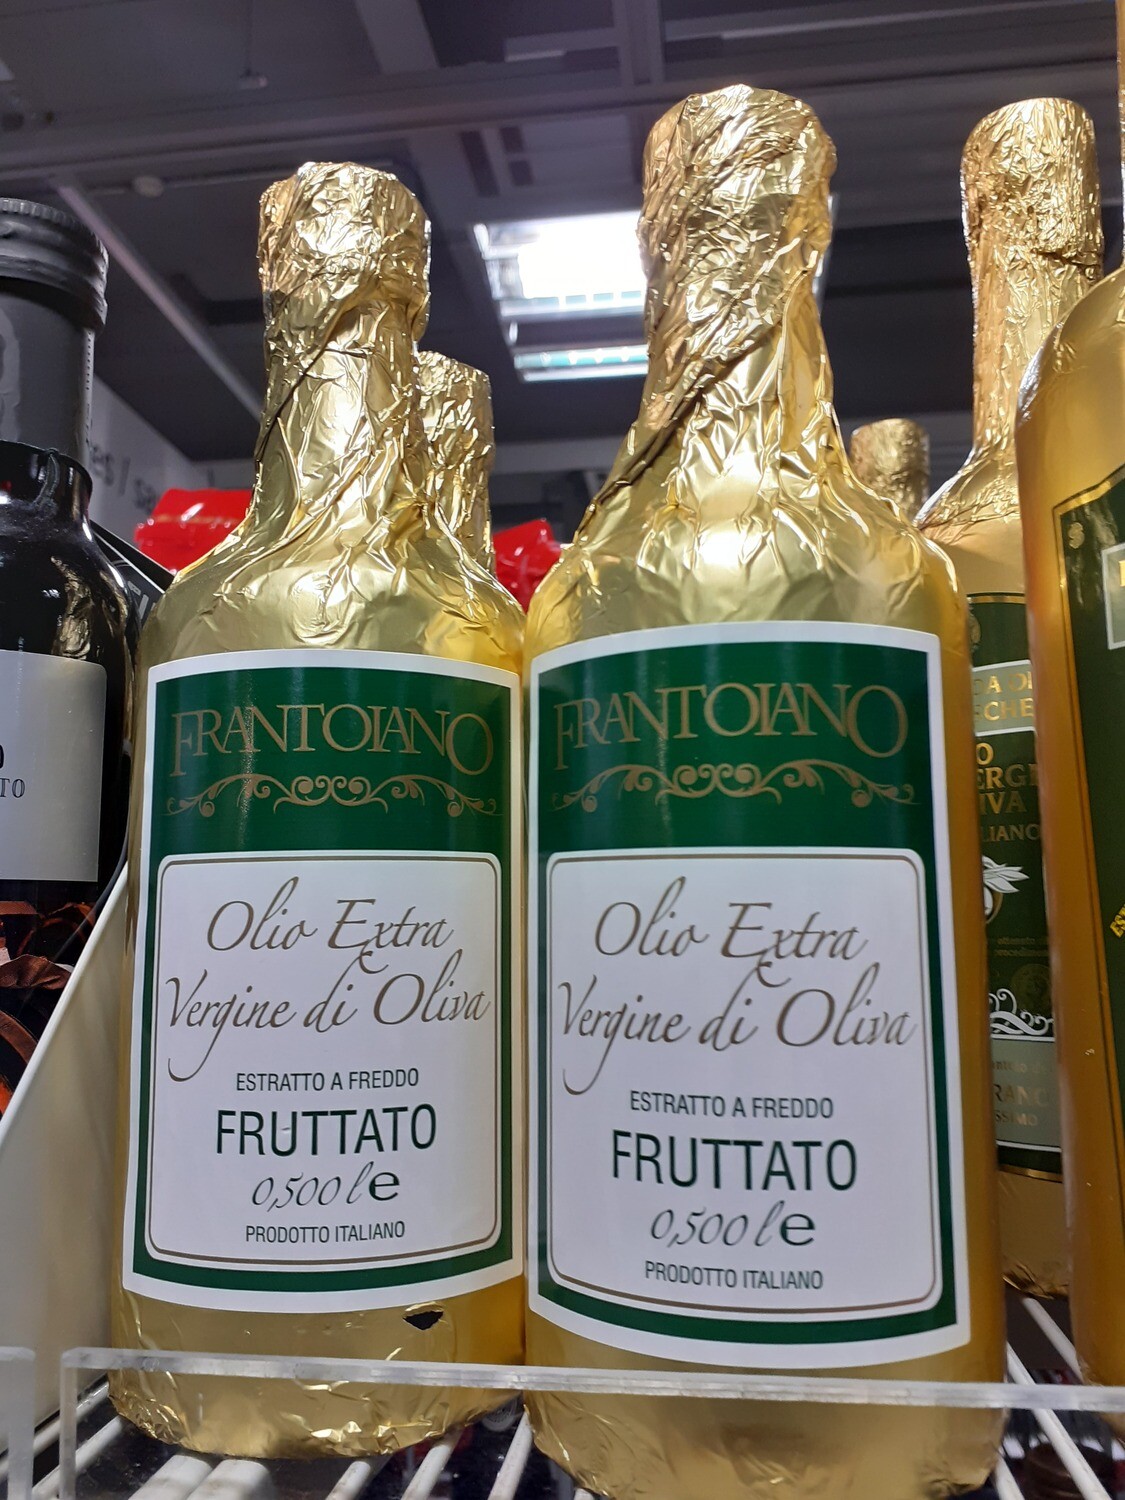 Frantoiano huile olive e.v. Fruitatto 1x5DL